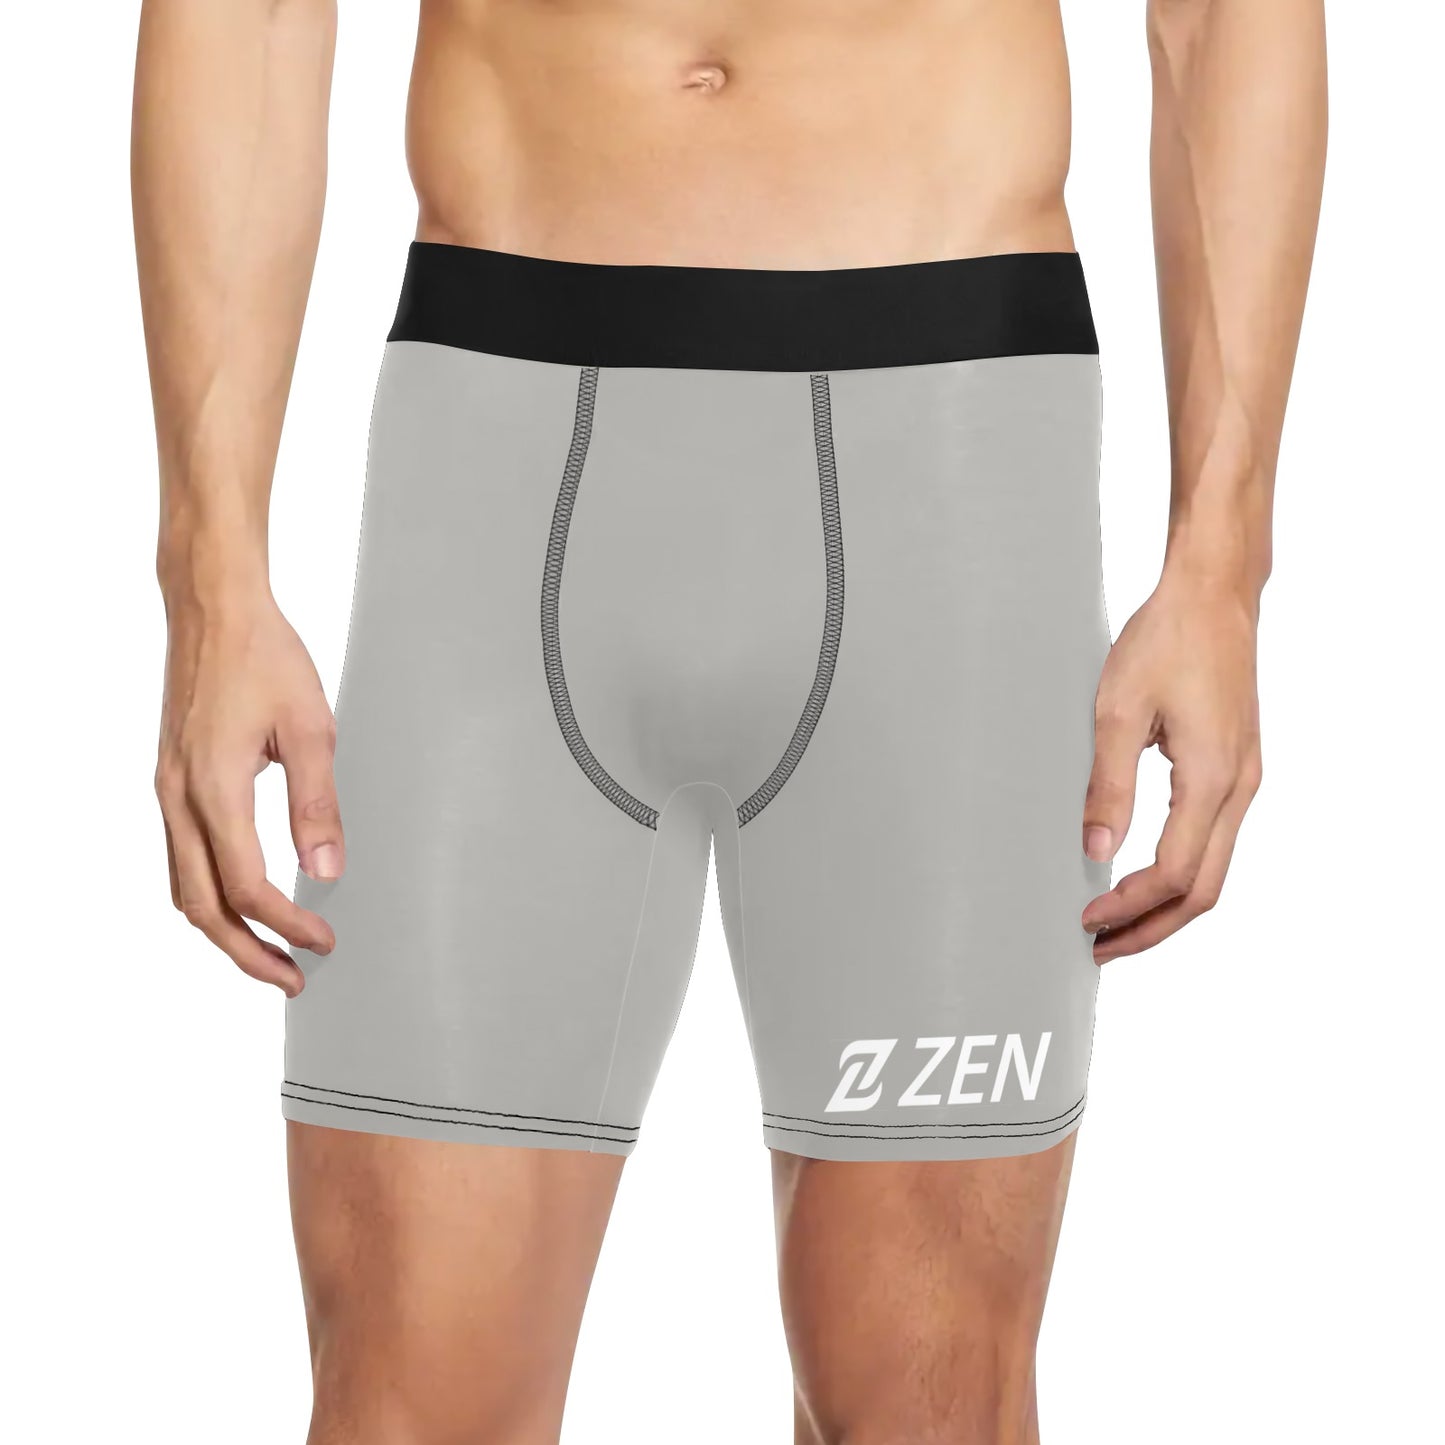 Zen Boxers Long - Gray